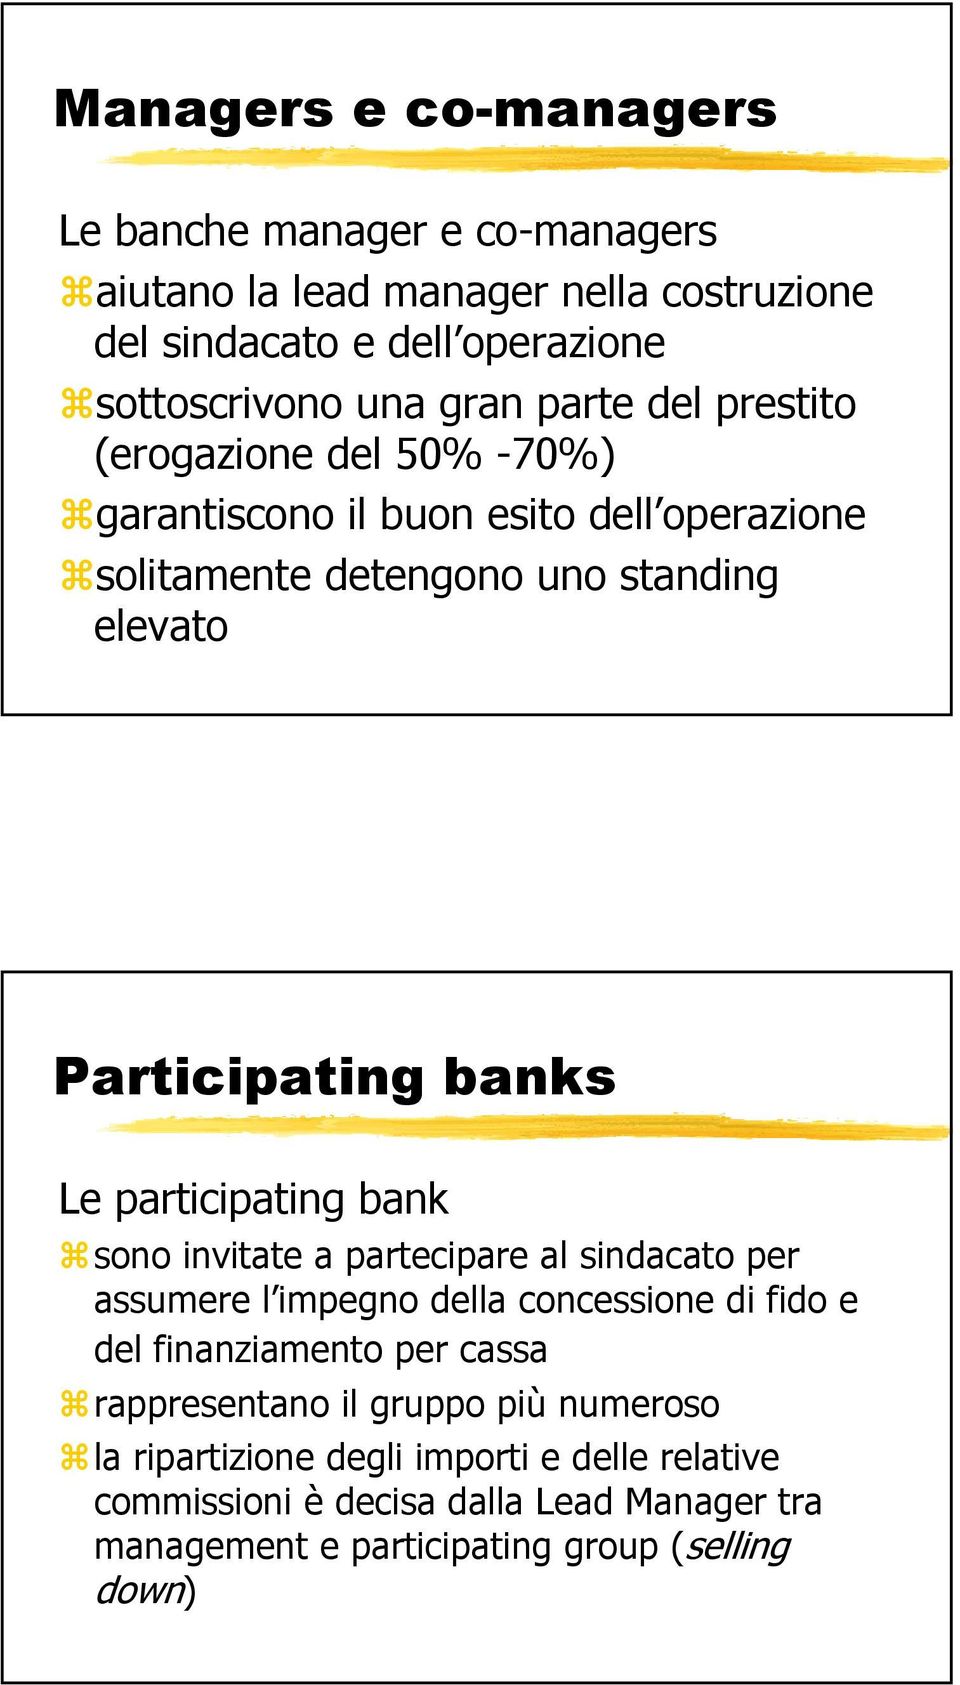 participating bank sono invitate a partecipare al sindacato per assumere l impegno della concessione di fido e del finanziamento per cassa rappresentano